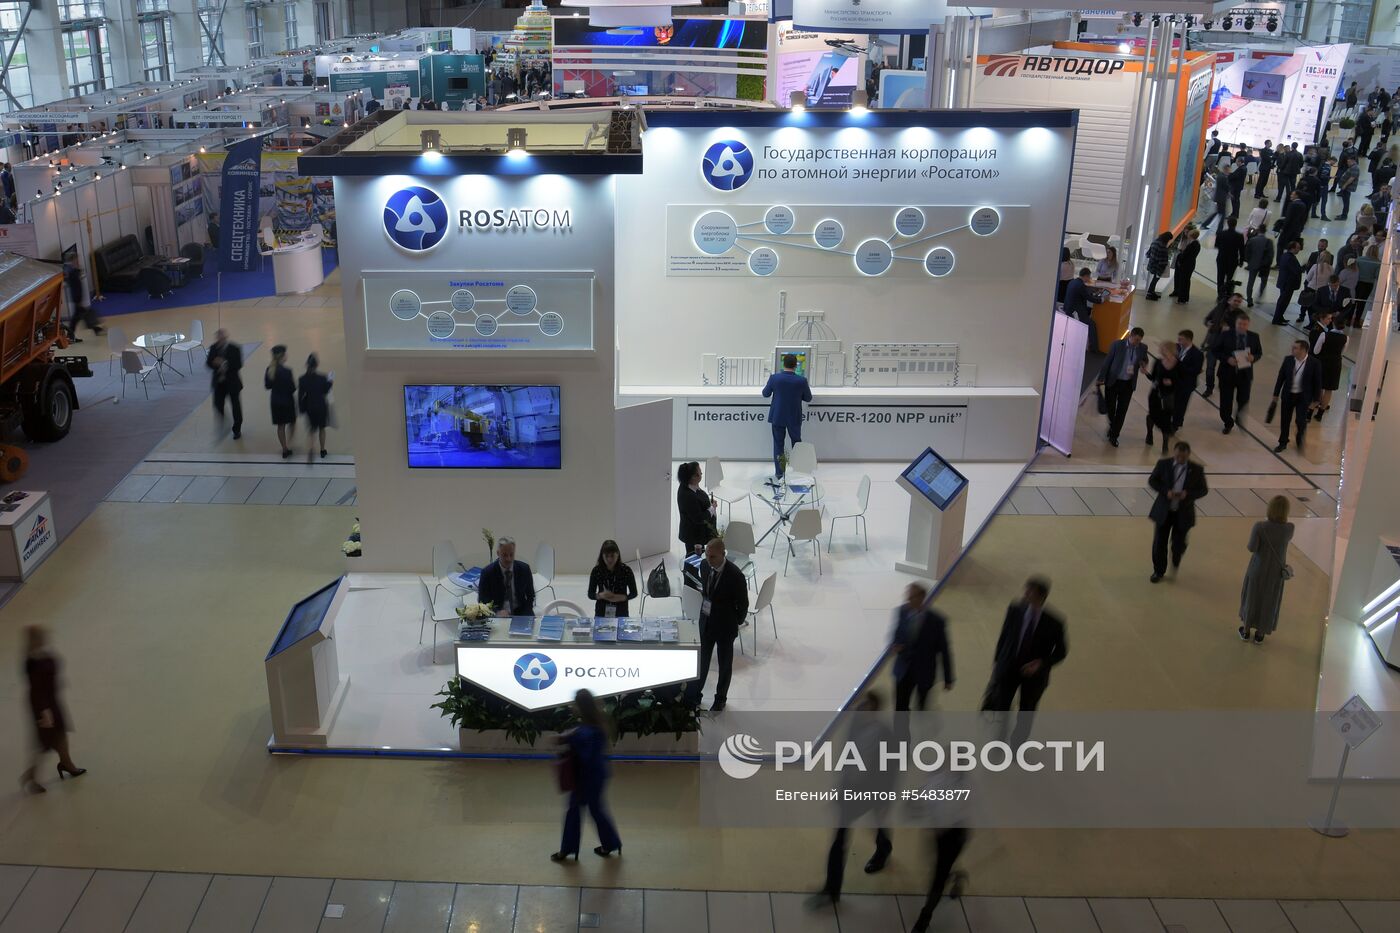 XIV Всероссийский форум-выставка "Госзаказ - за честные закупки"